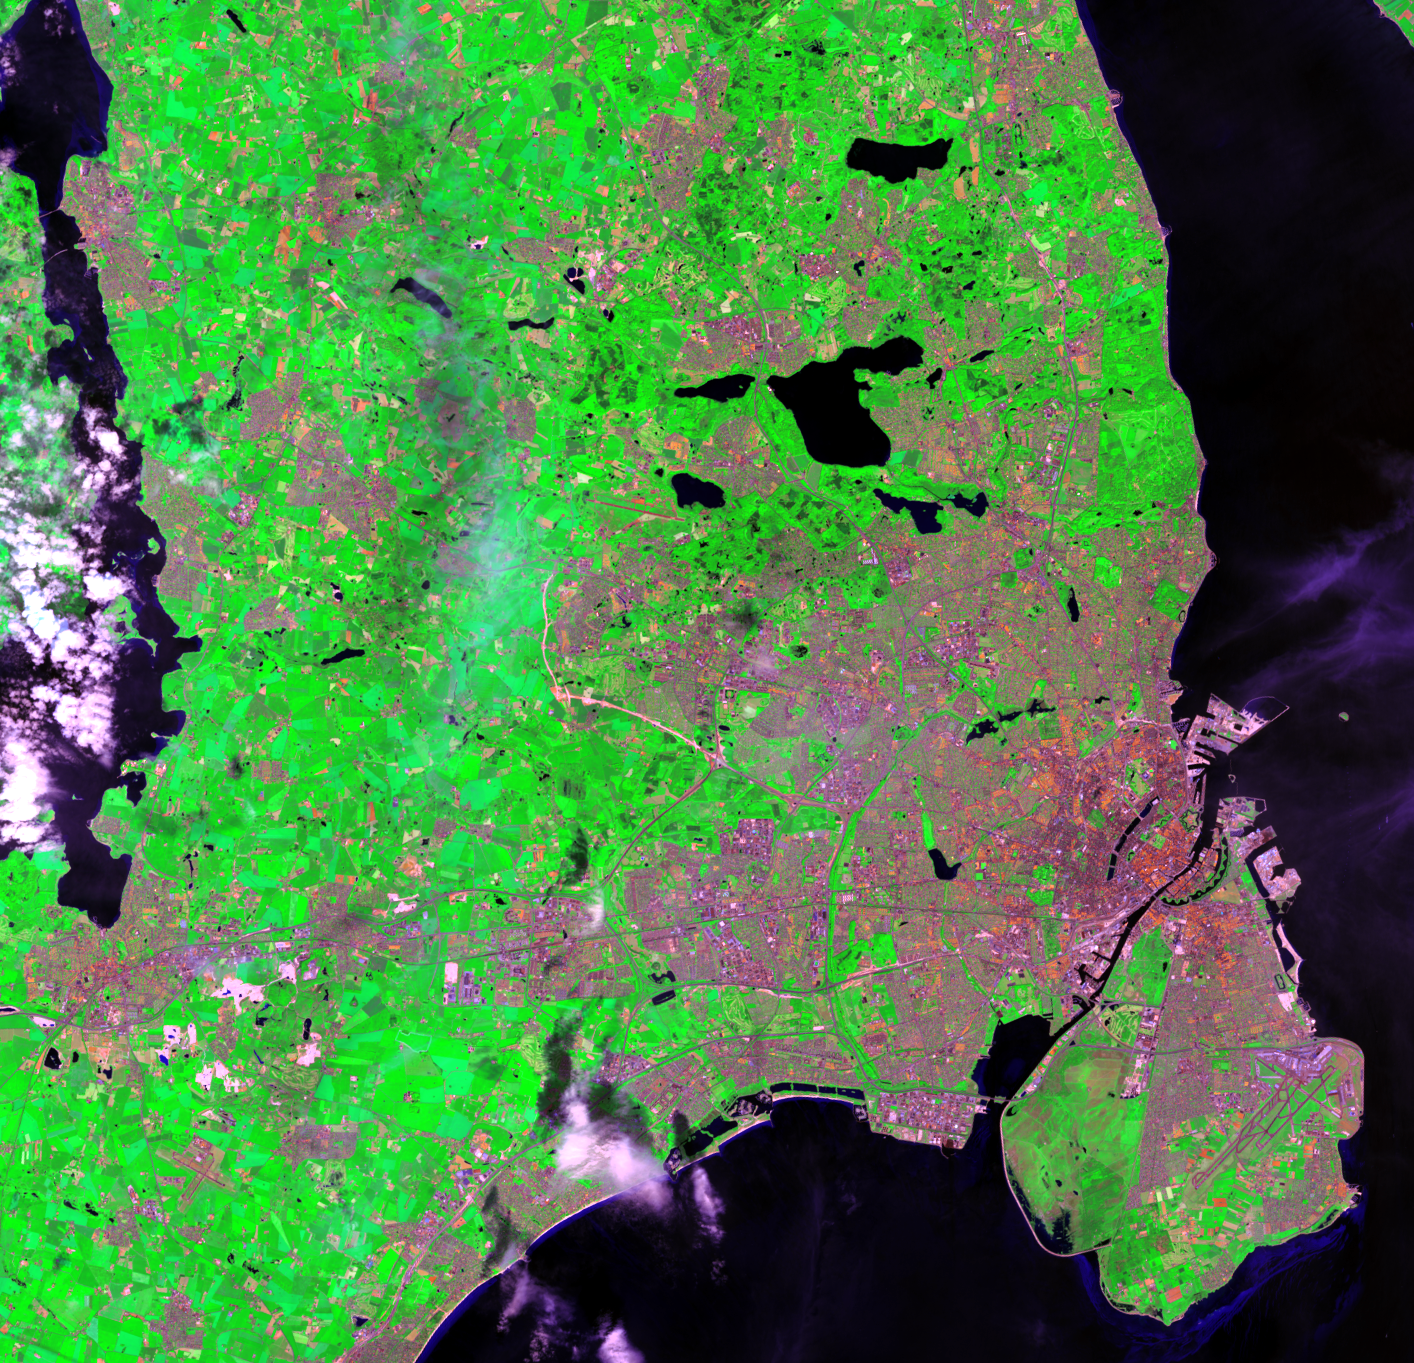 June 17, 2014, Landsat 8 (path/row 194/21) — Copenhagen’s Five-Finger Plan